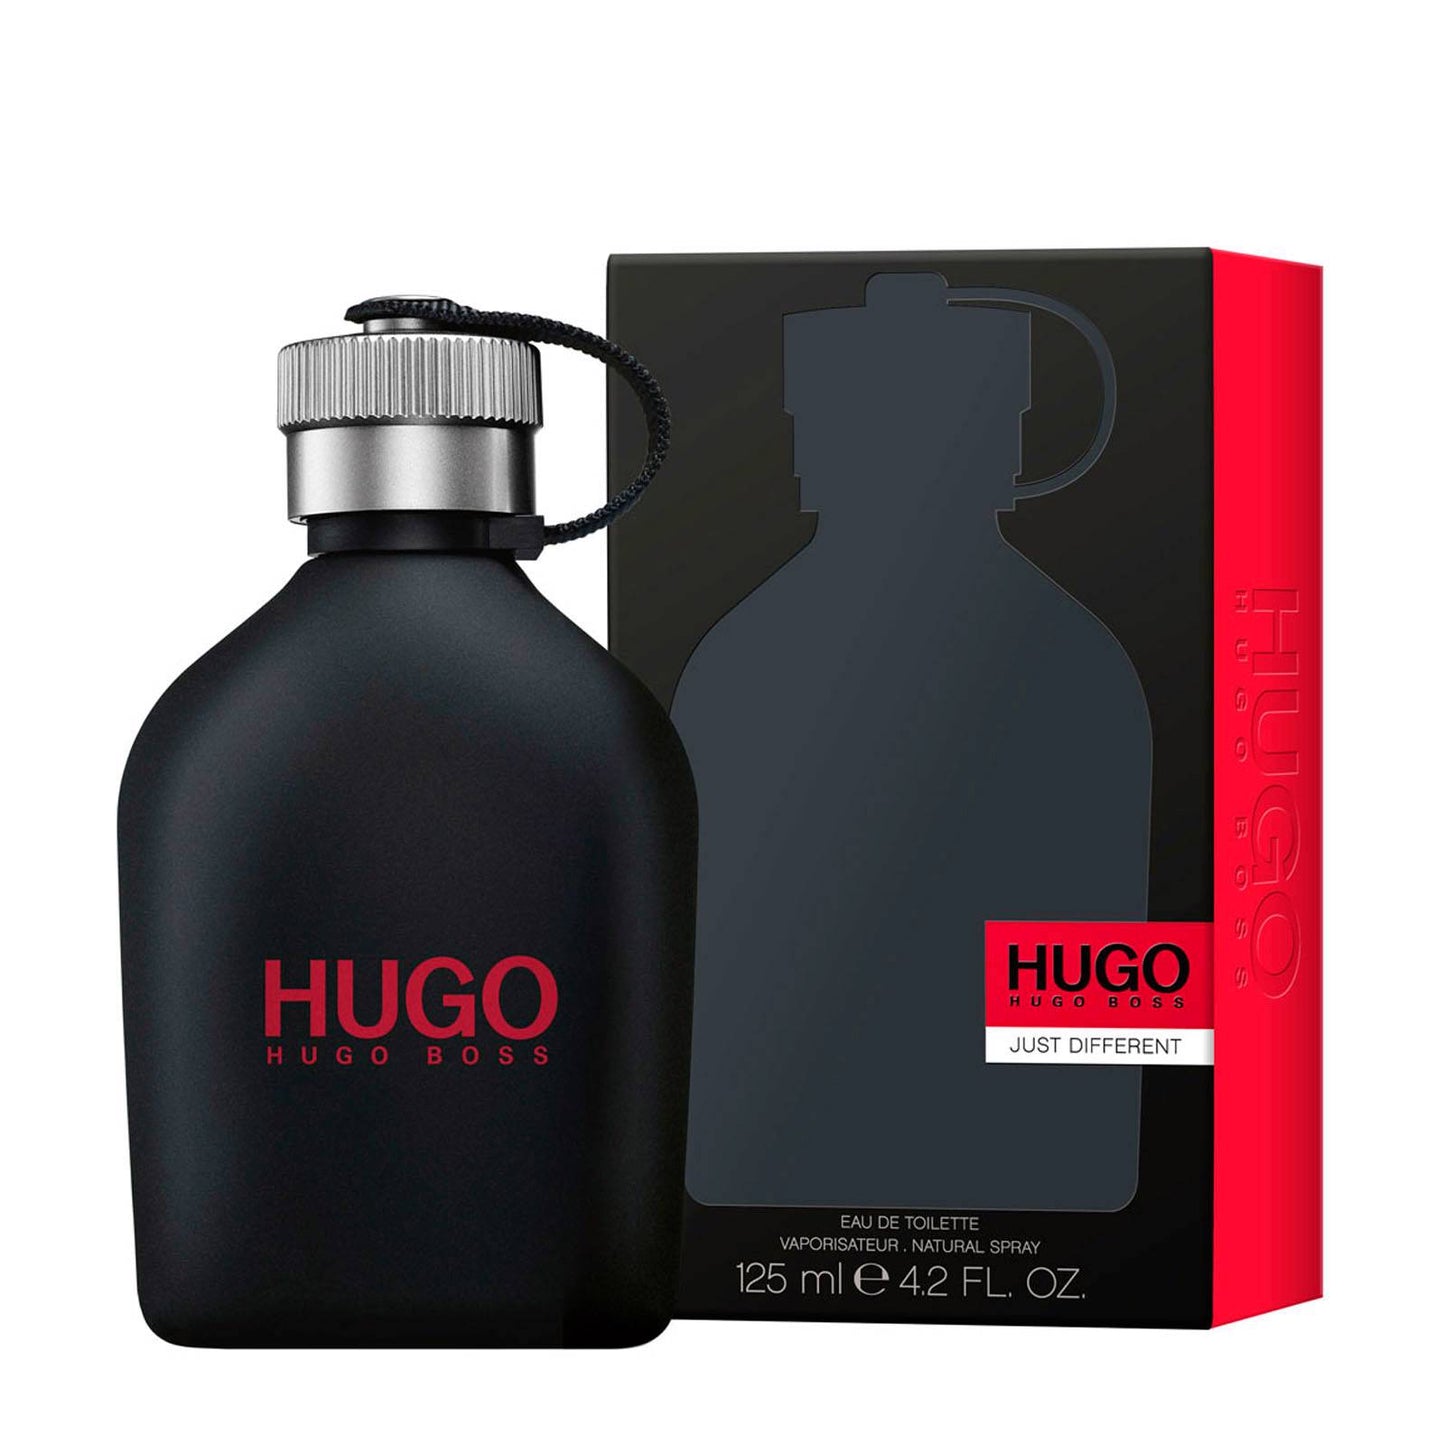 Hugo Boss - Hugo Just Different EDT